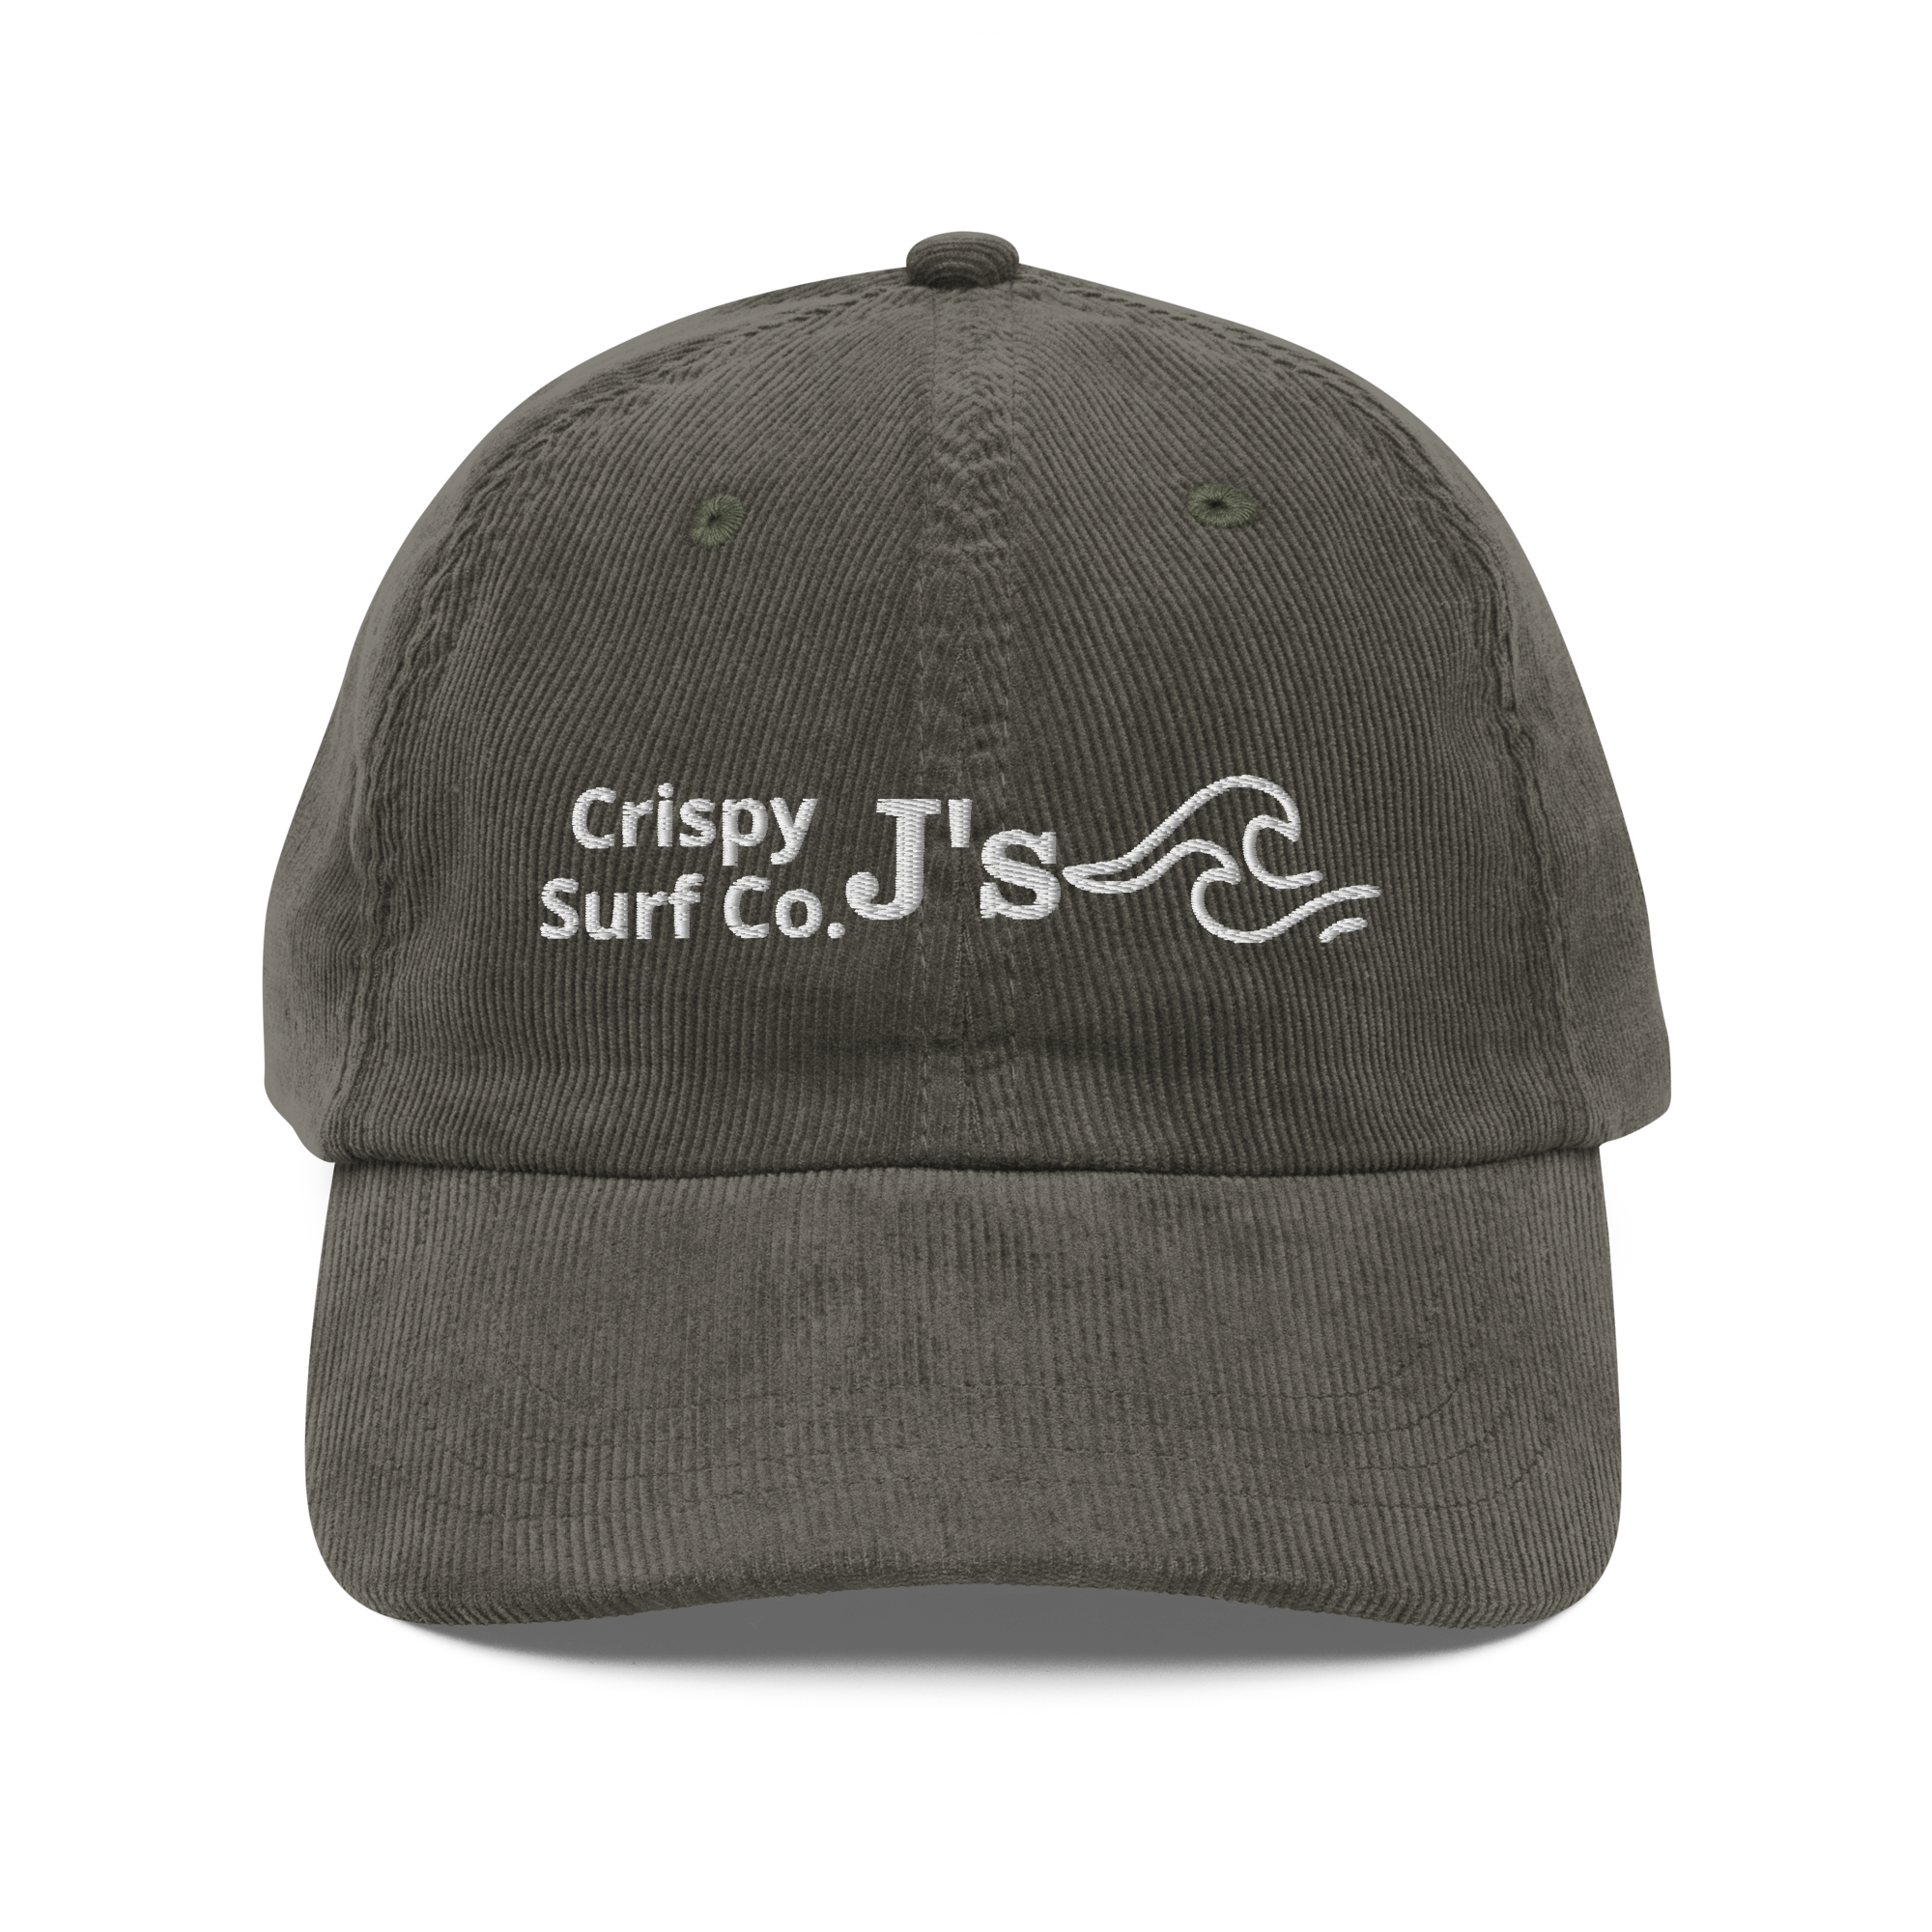 Crispy J's Surf Co. Corduroy Cap